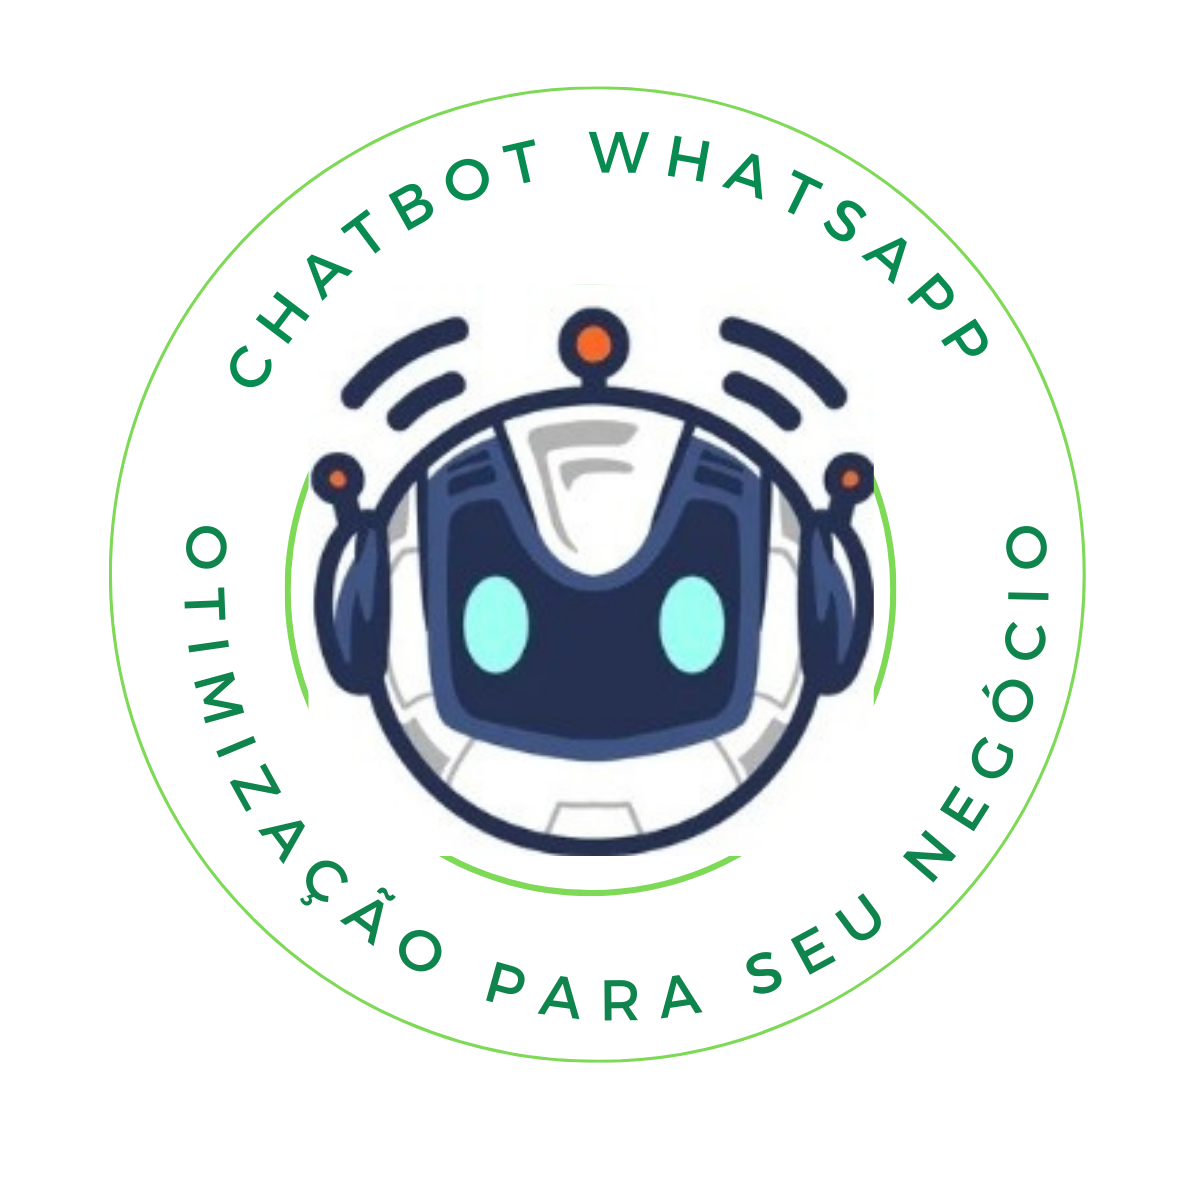 Chatbot para educação